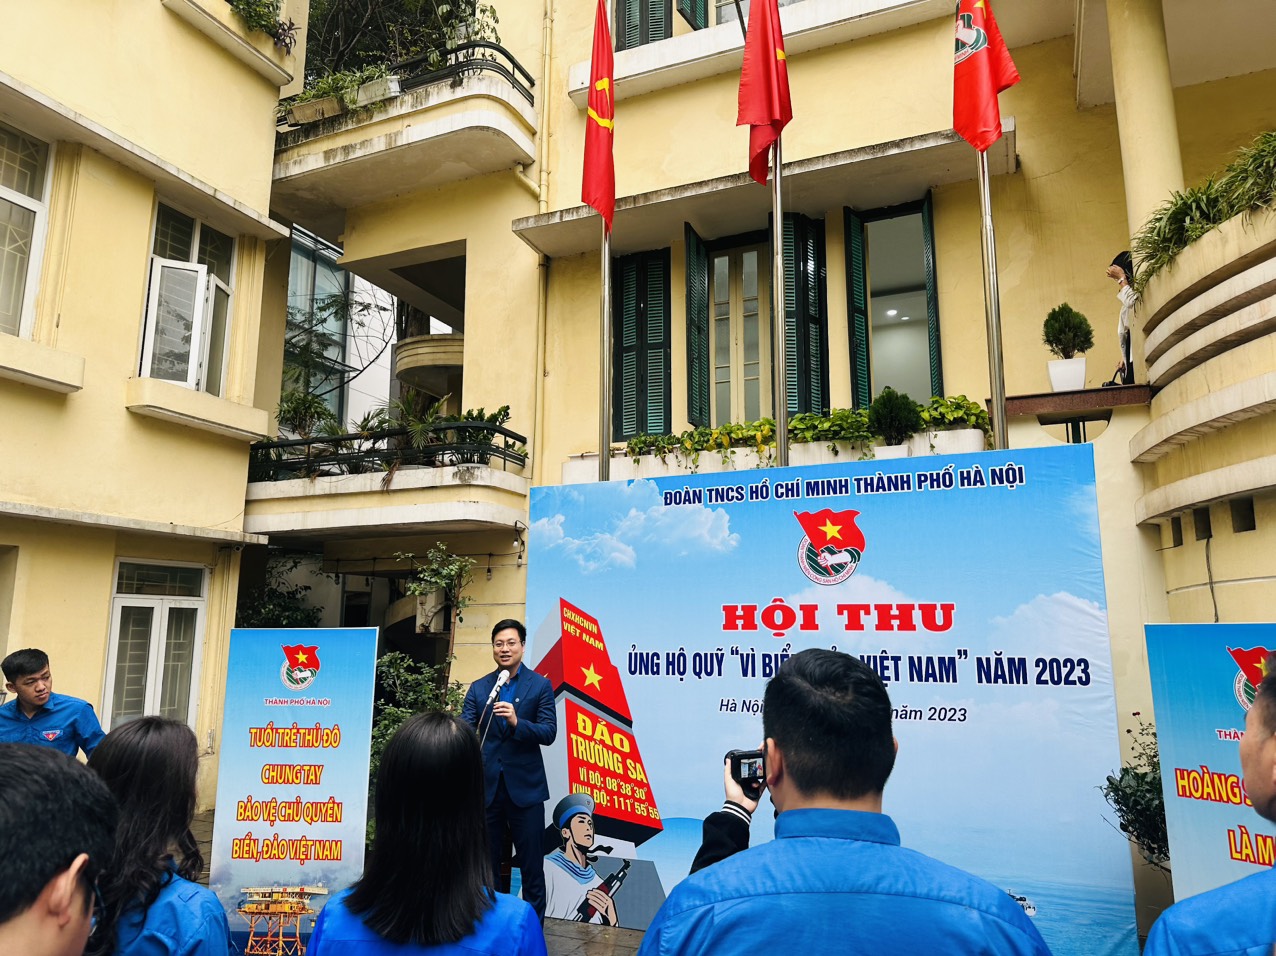 Đoàn trường Đại học Công nghiệp Hà Nội ủng hộ Quỹ Vì biển đảo Việt Nam năm 2023